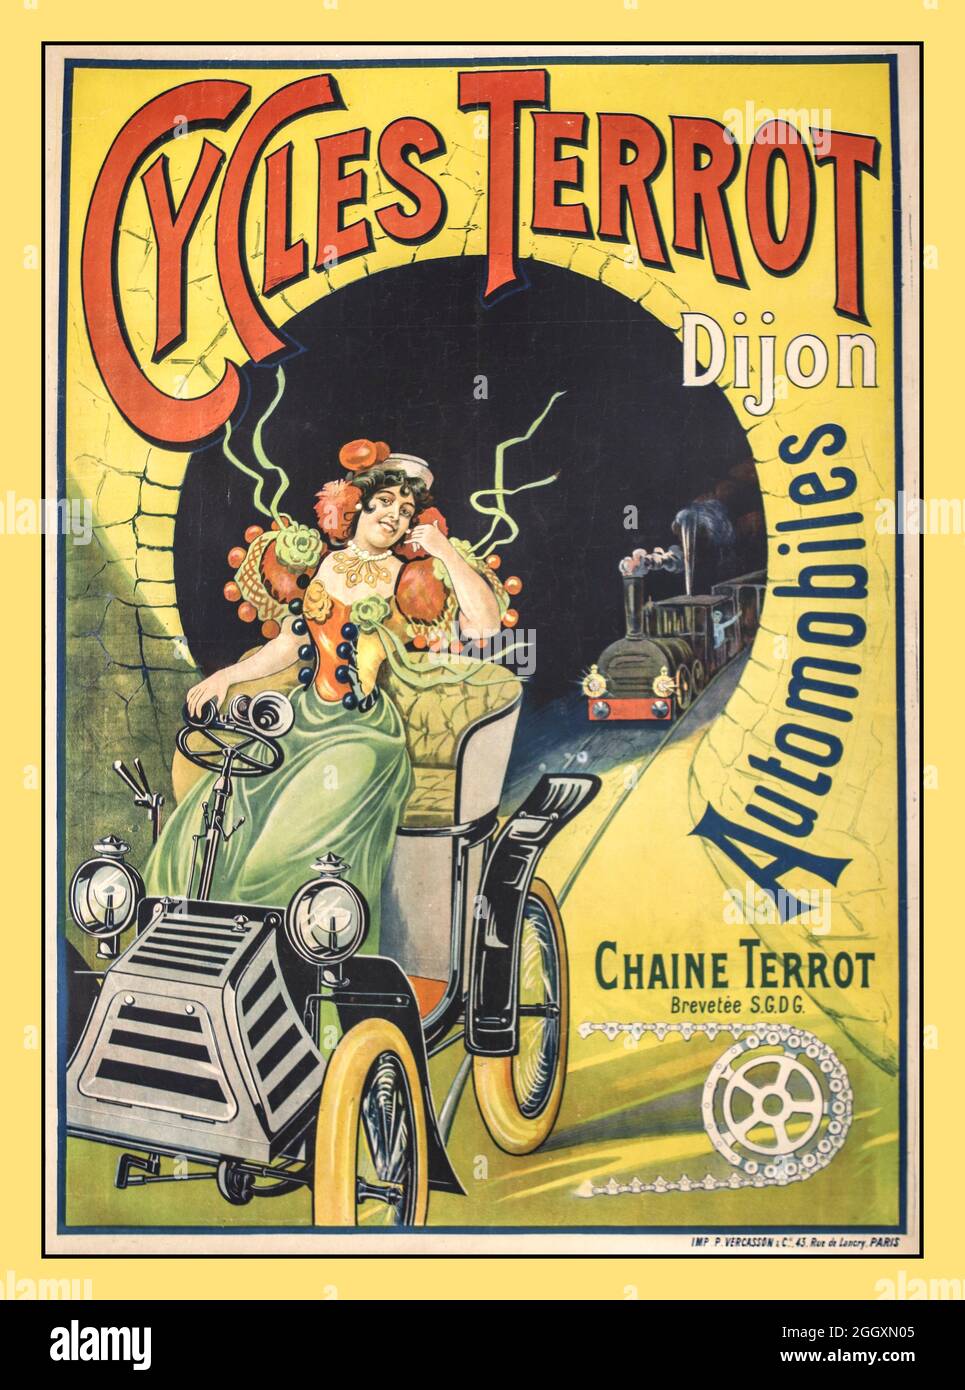 Französisches Plakat des Jahrgangs 1900 ‘Cycles Terrot Dijon Automobiles’mit Chaine Terrot Lithographisches Plakat gedruckt von: P. Vercasson & Cie., 43, Rue de Lancry, Paris Frankreich datiert: ca. 1900 Stockfoto